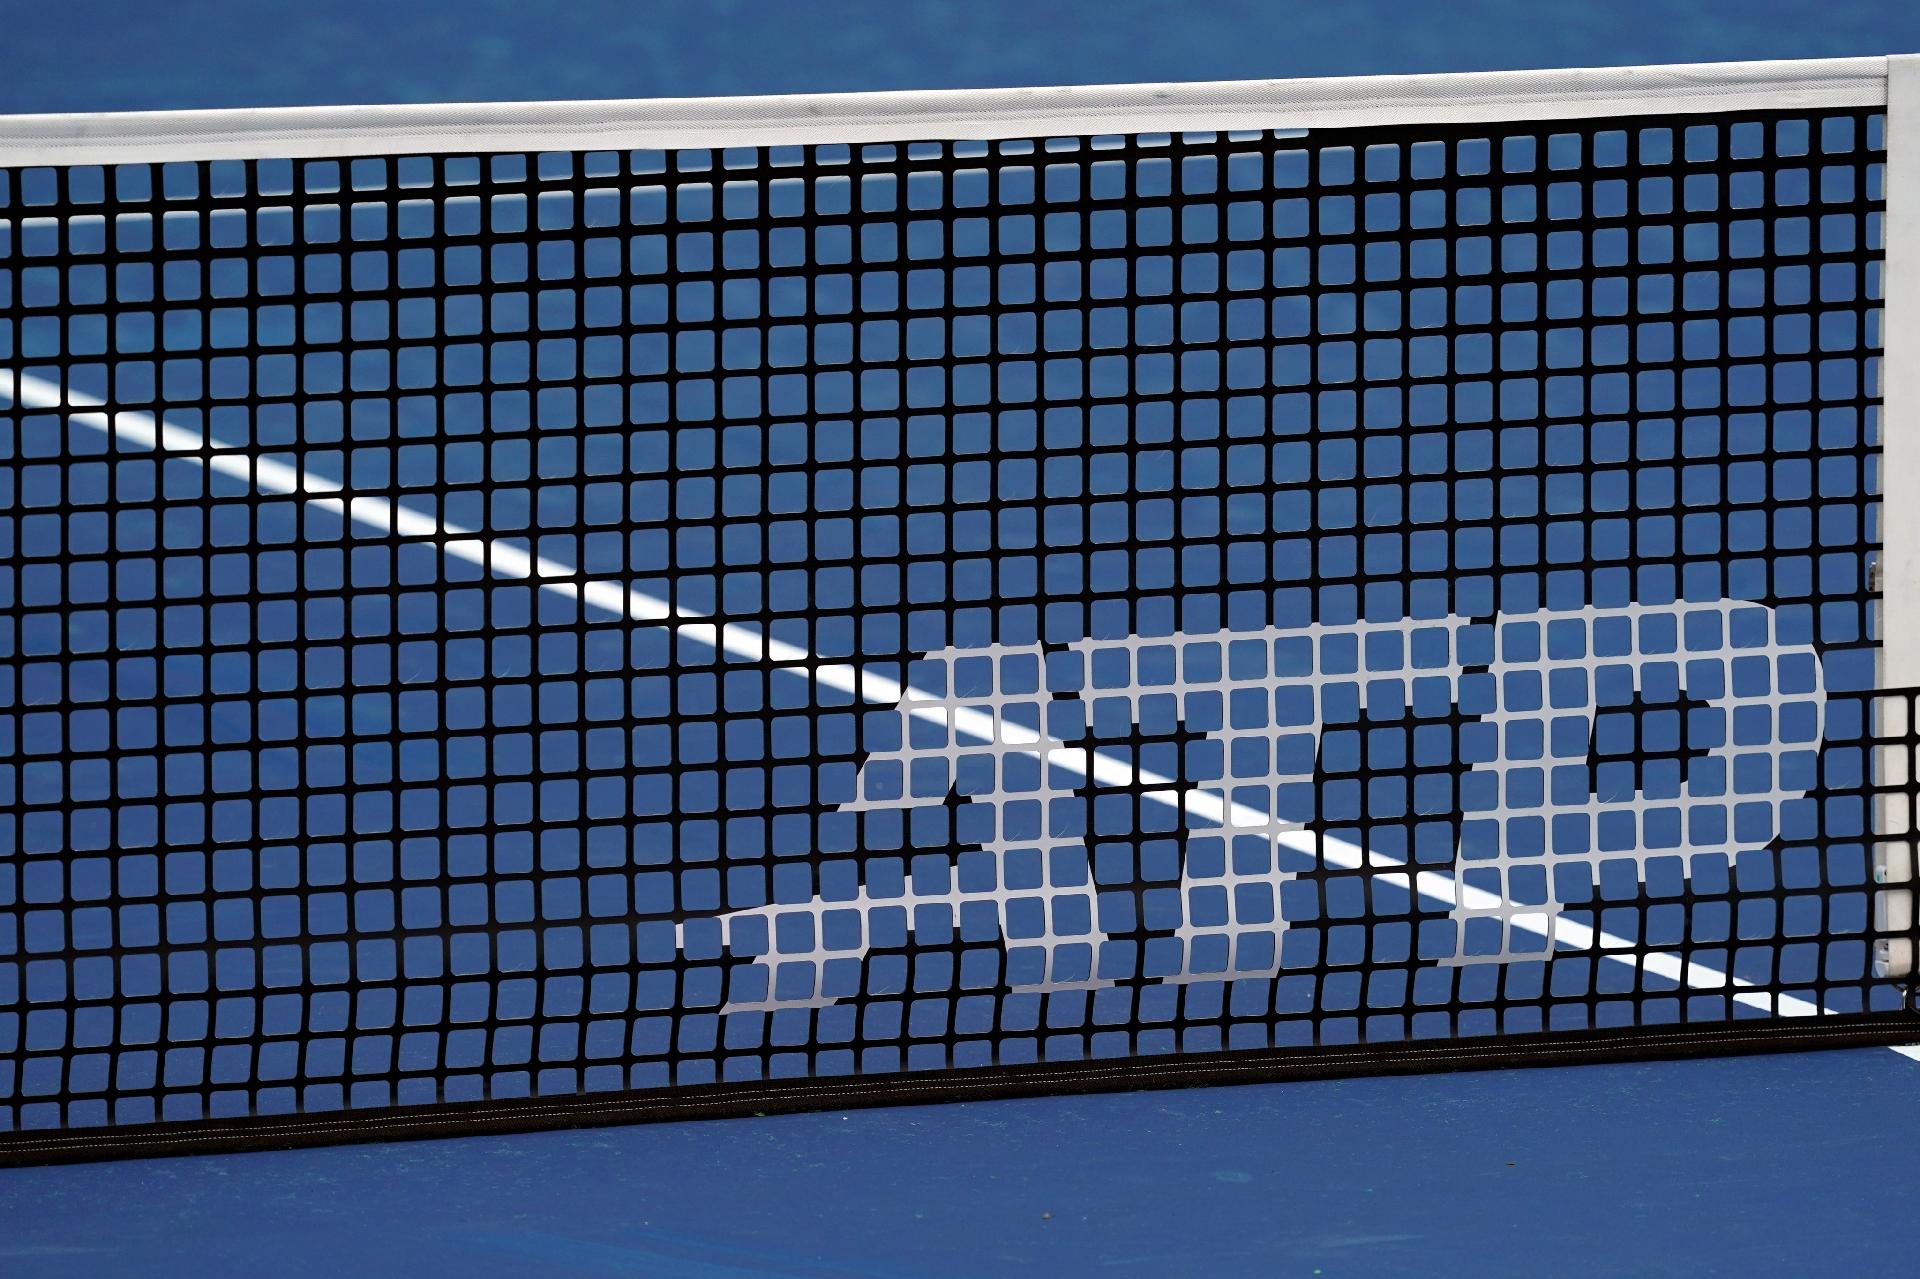 tênis atp 2019